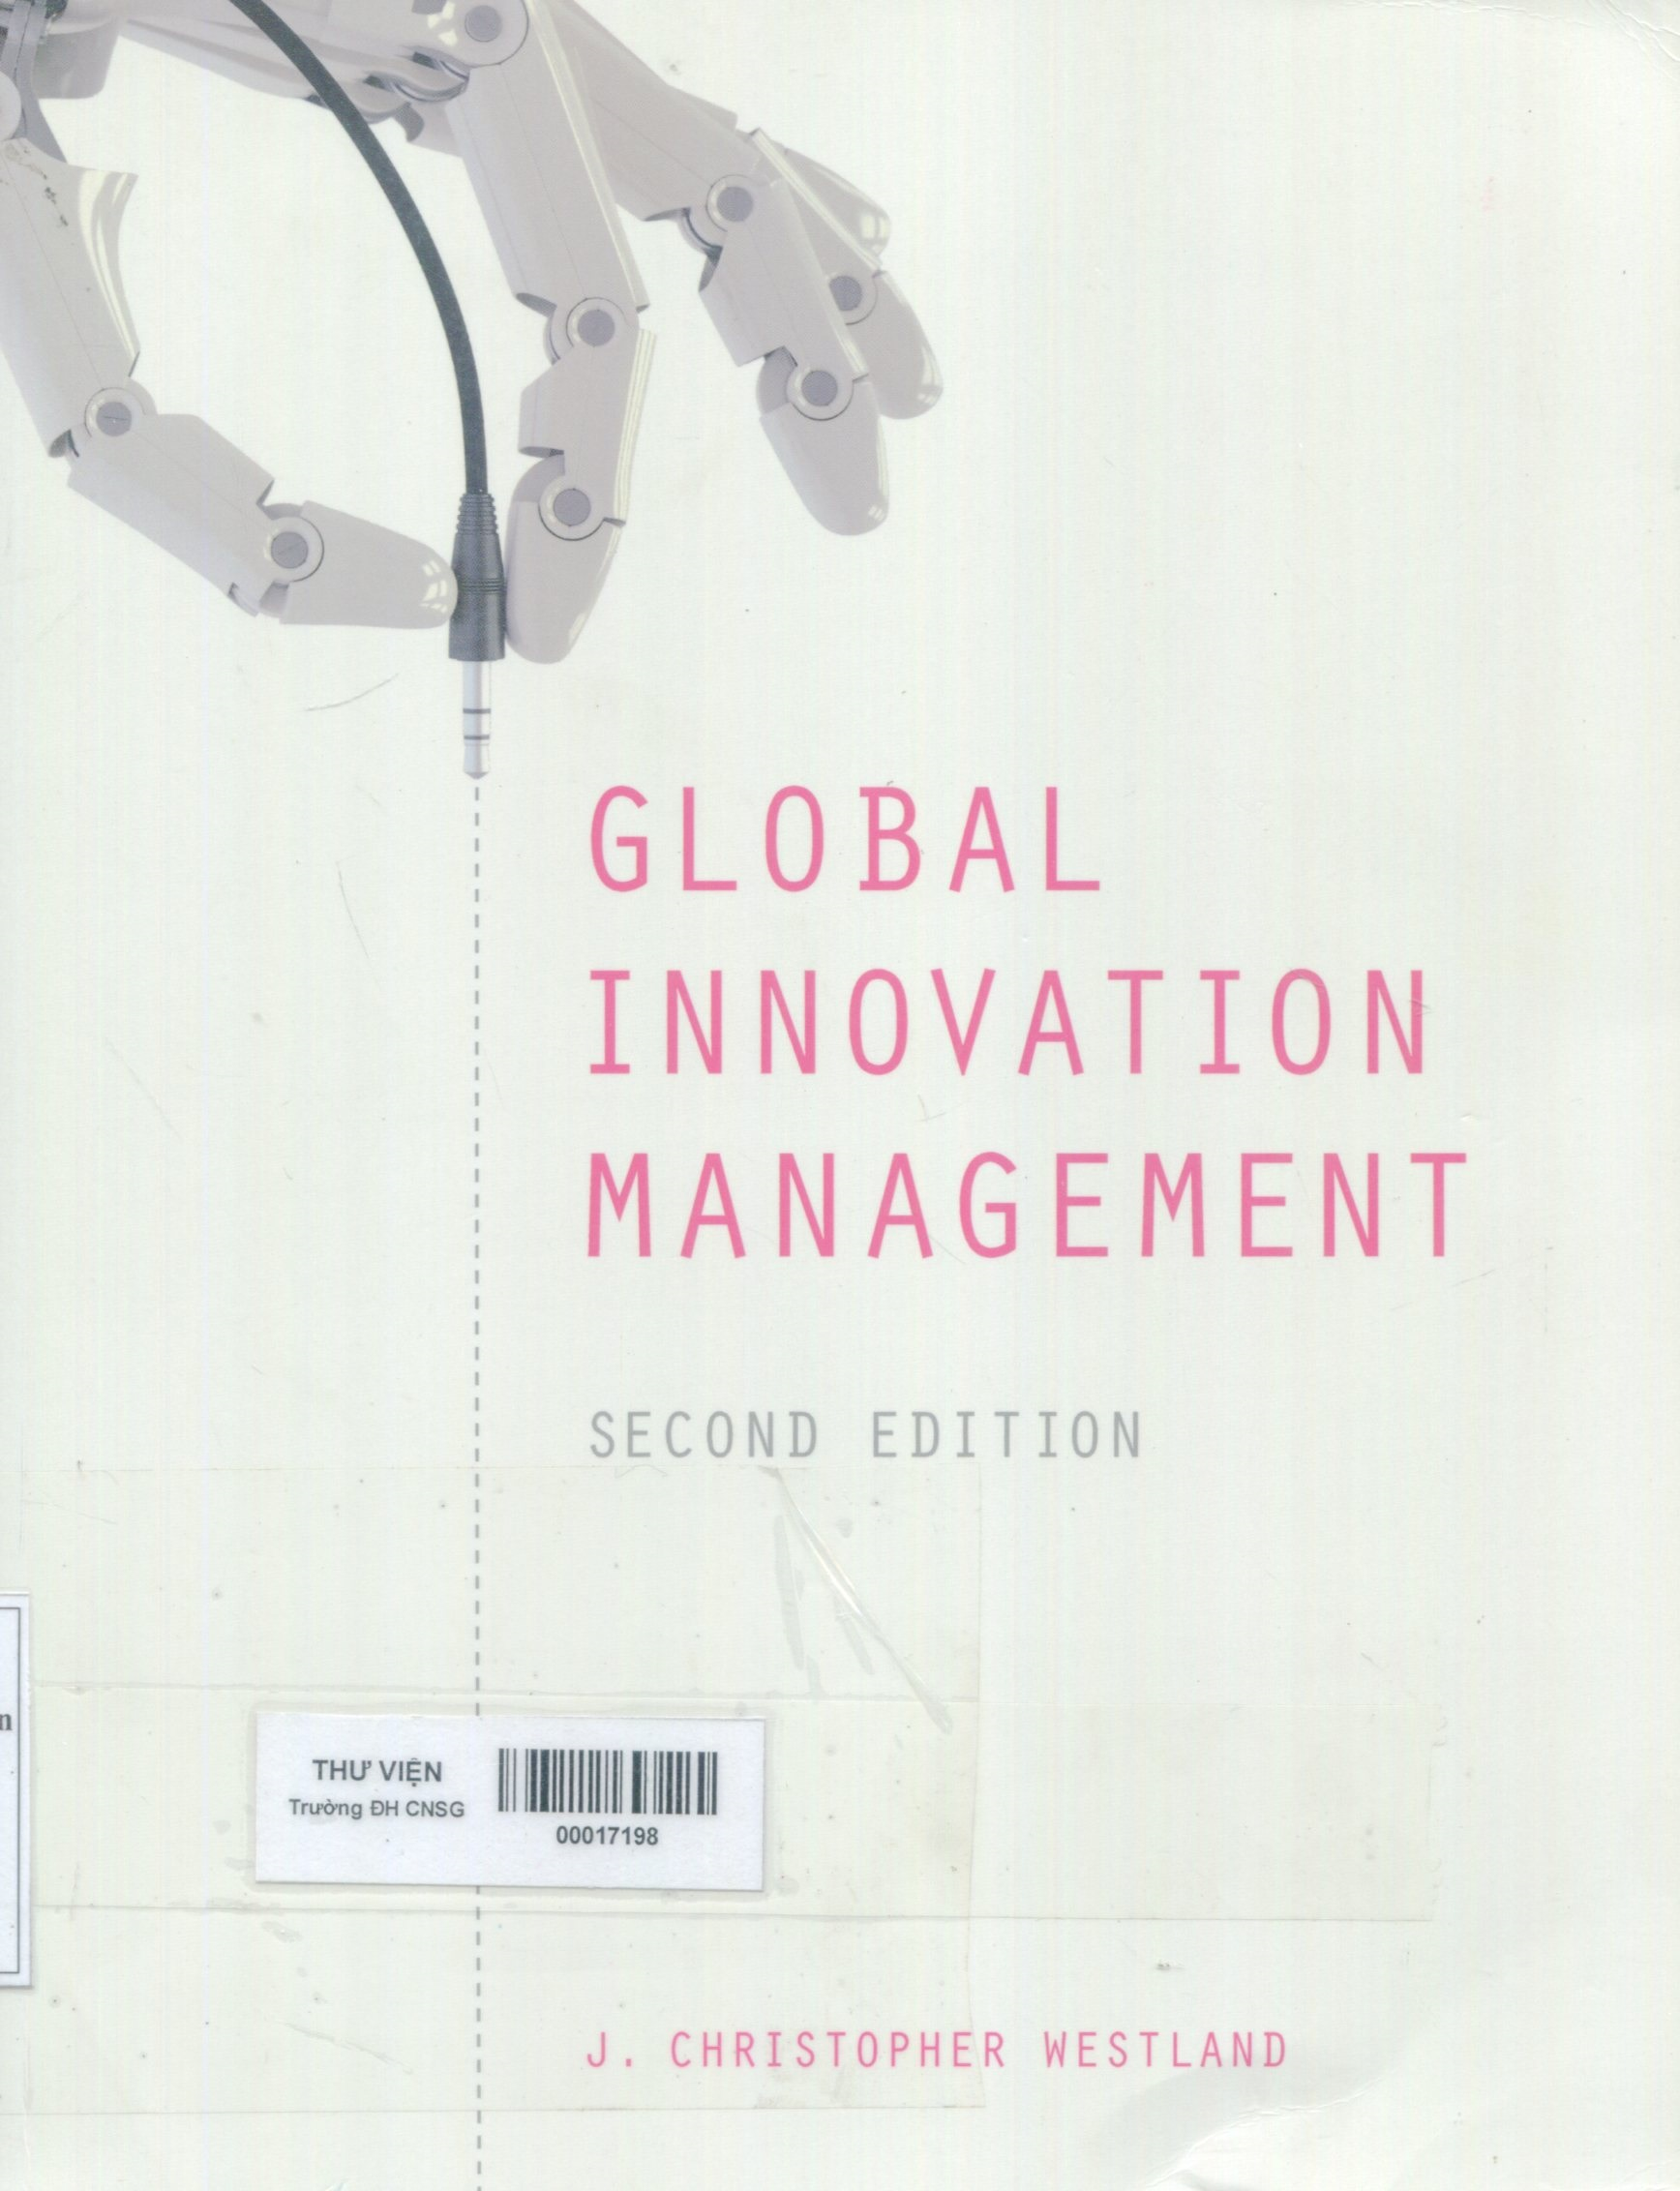 Global innovation management